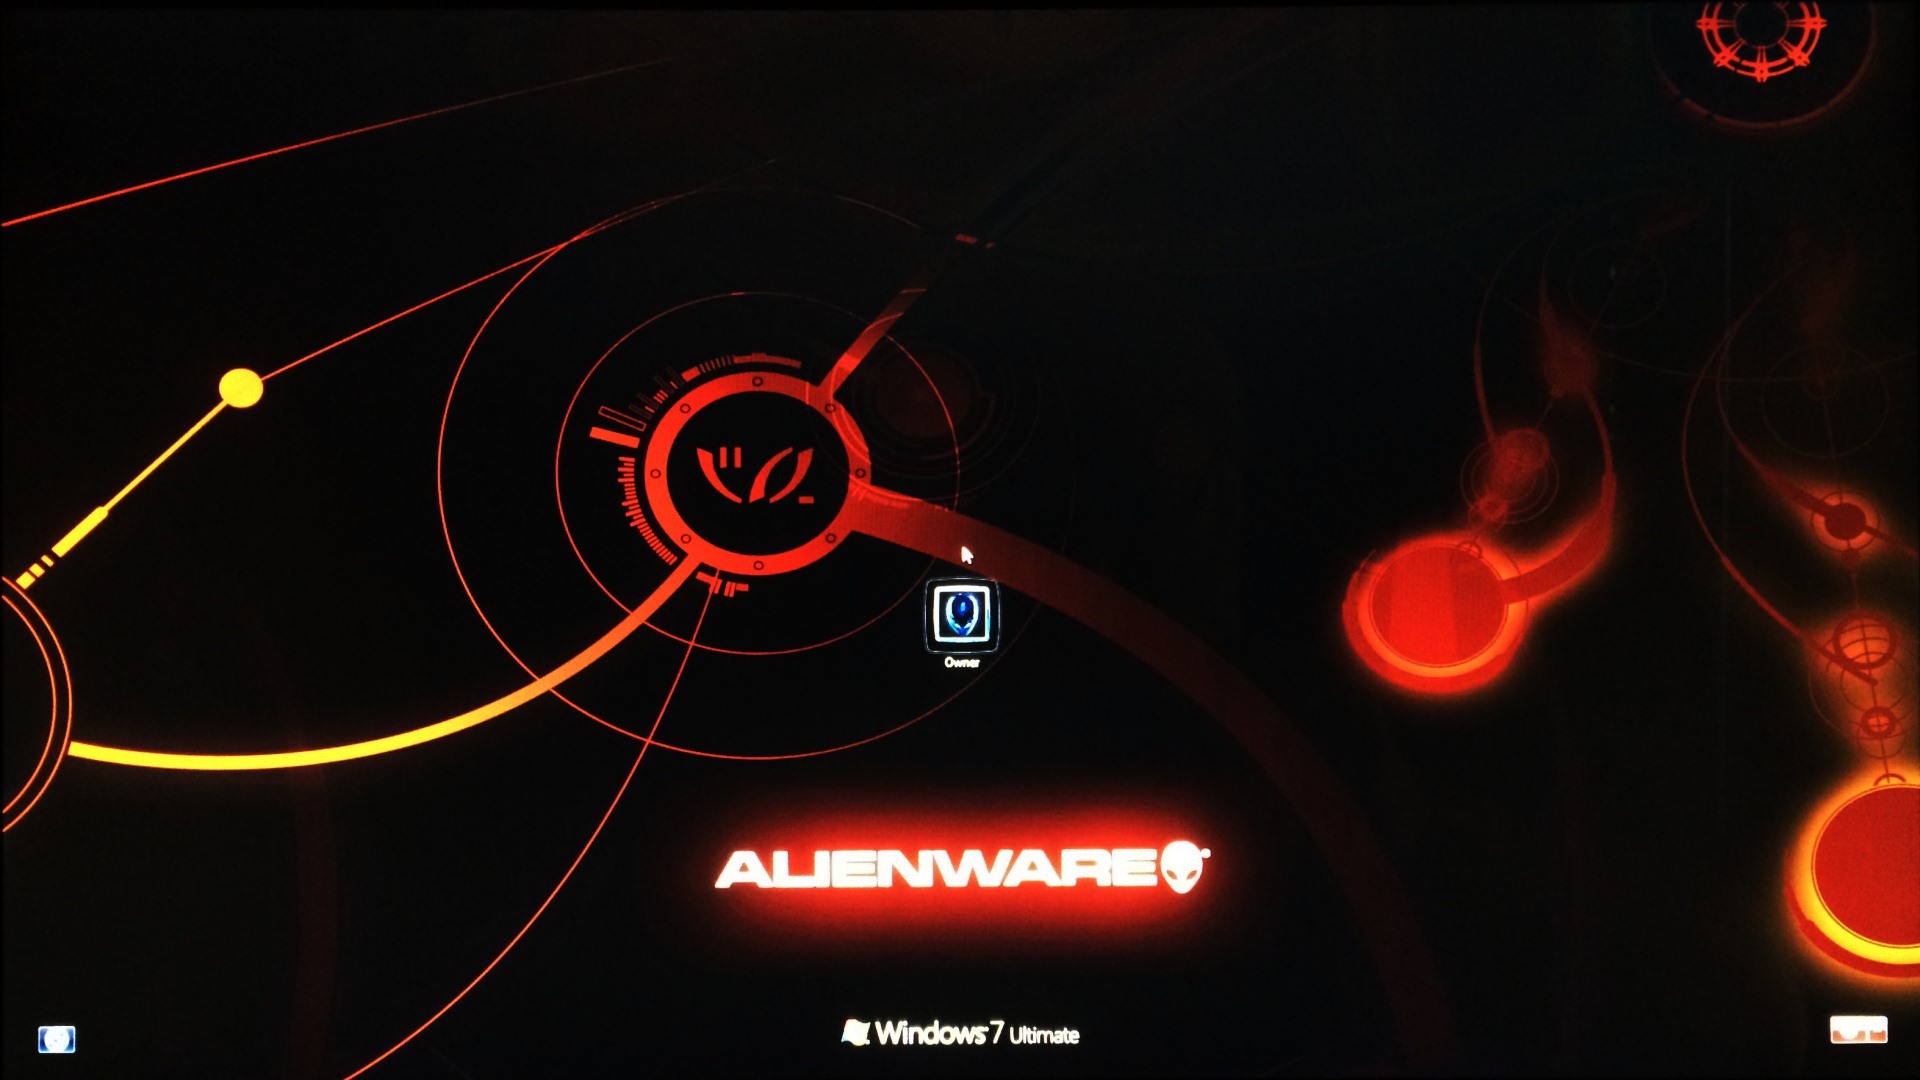 Alienware Wallpaper Windows 10-2oya5jo - Windows Alienware Boot , HD Wallpaper & Backgrounds